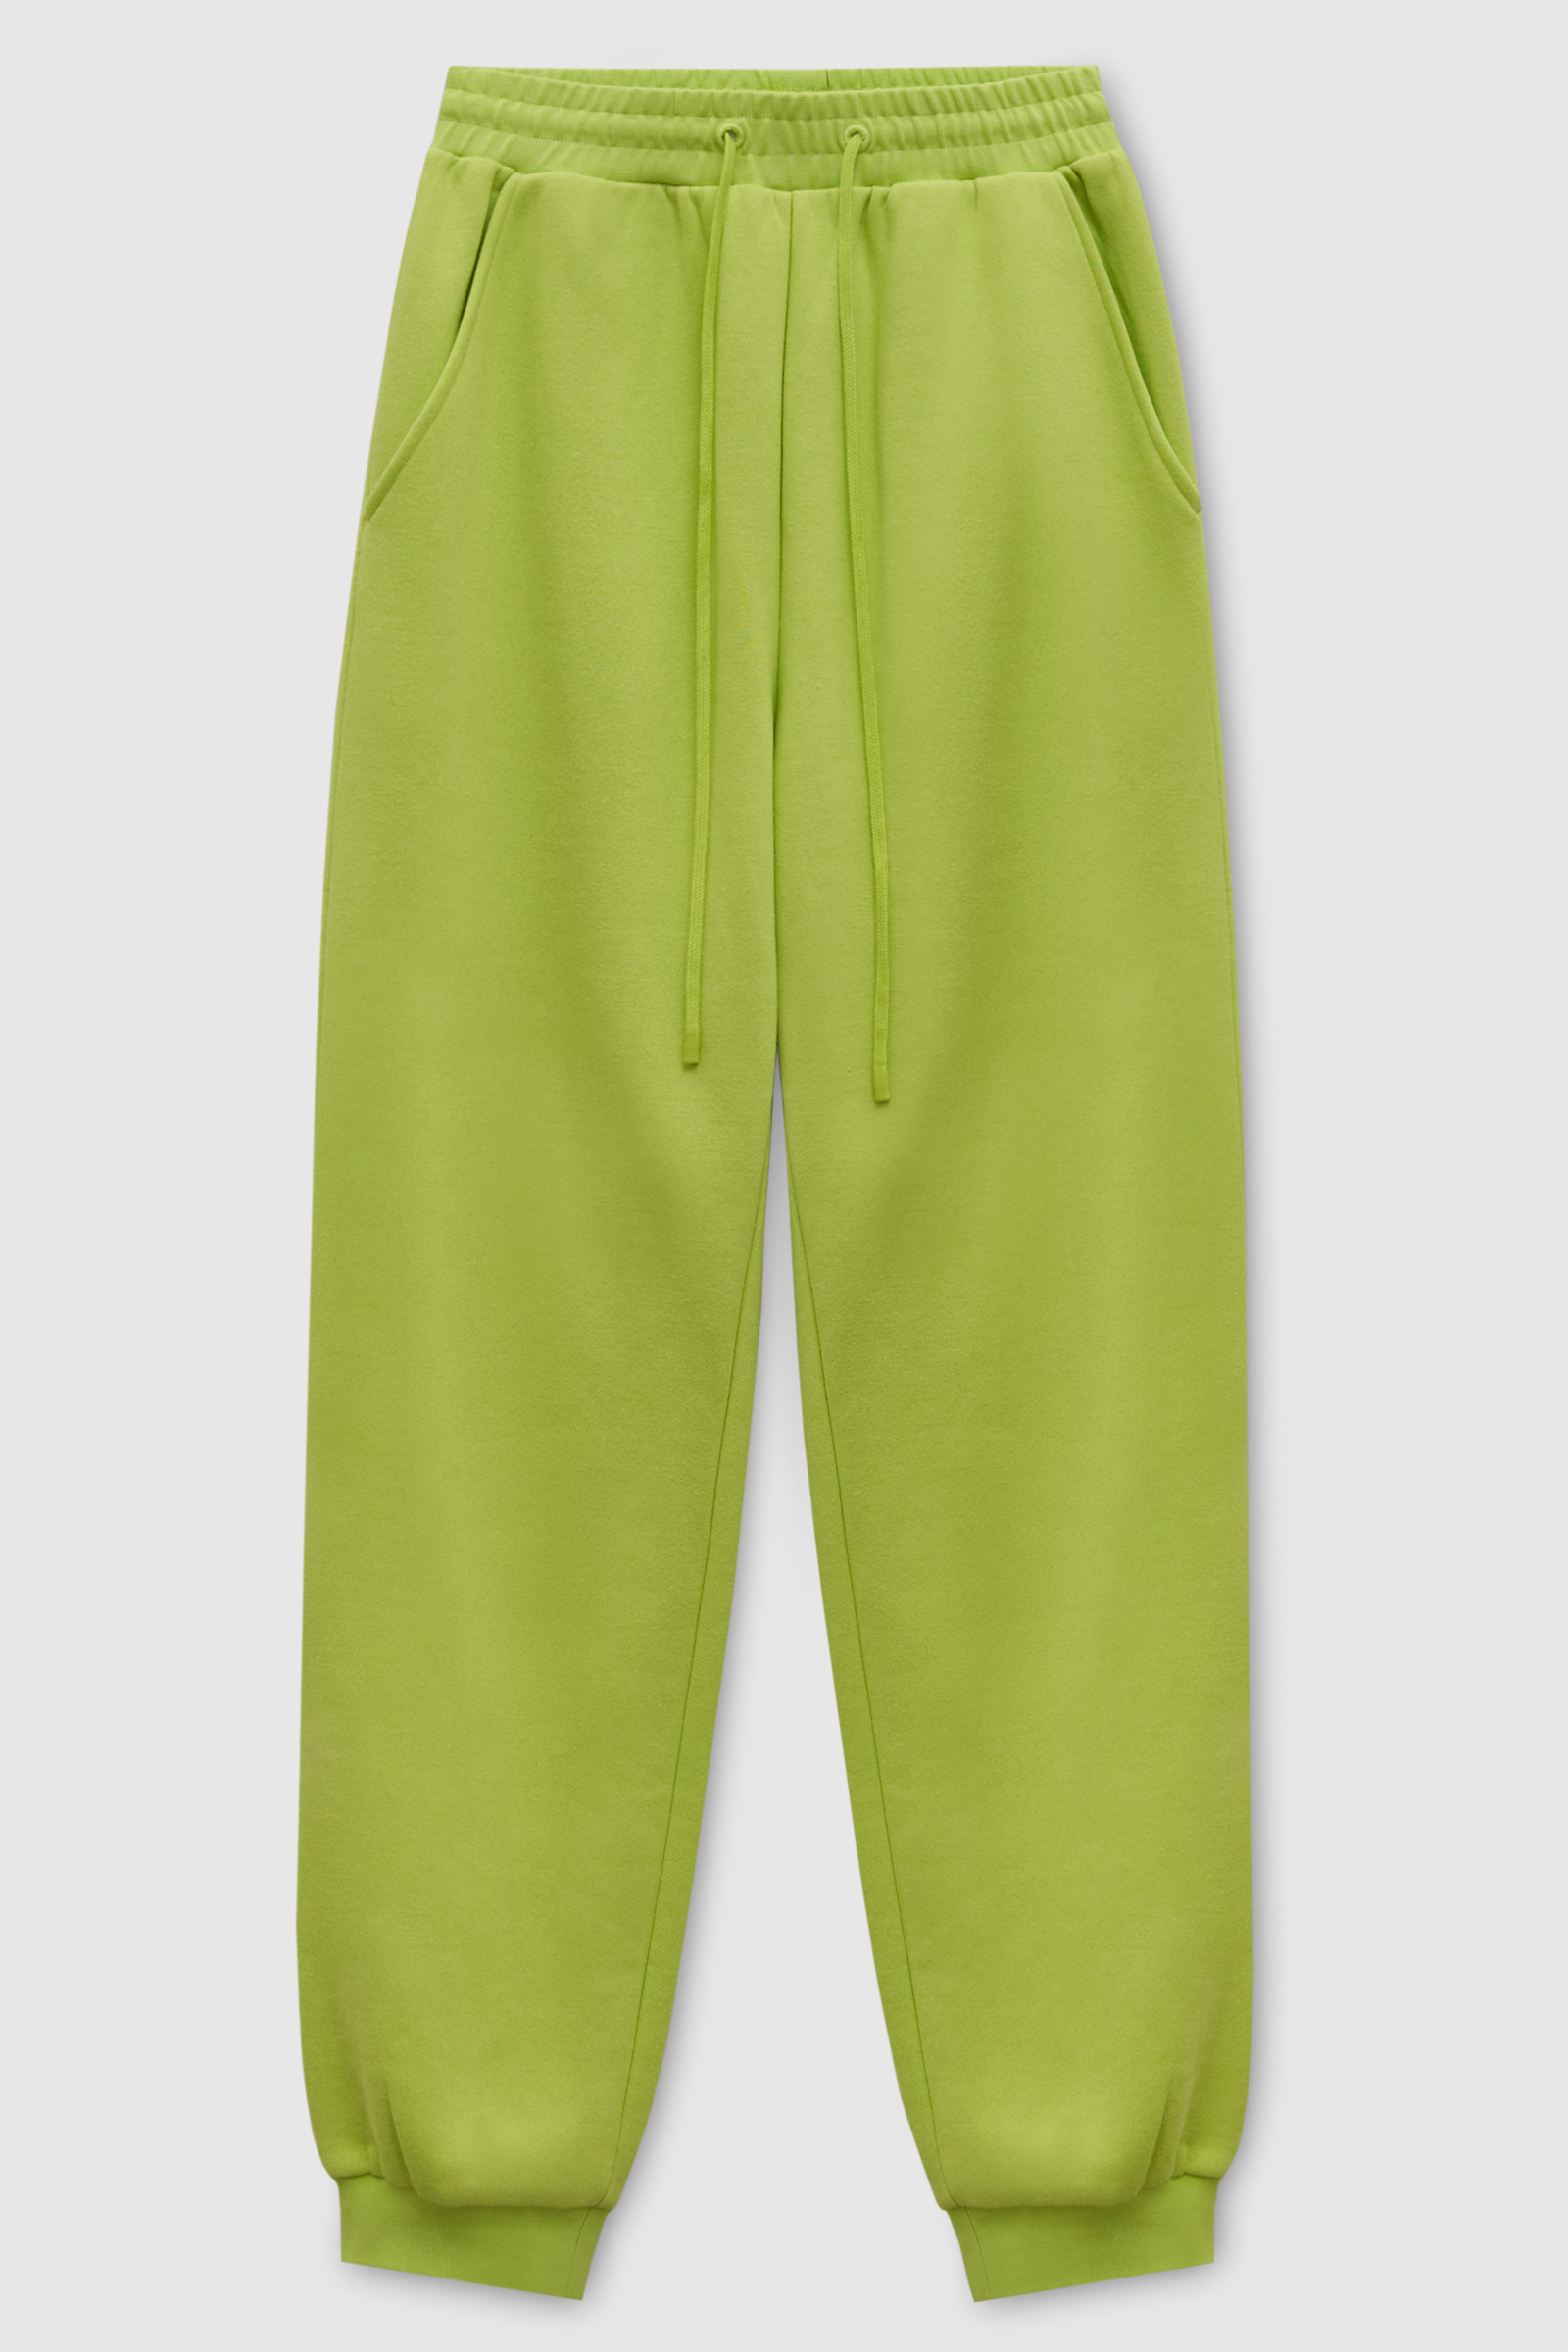 Спортивные брюки женские Finn Flare FAD110143 зеленые L